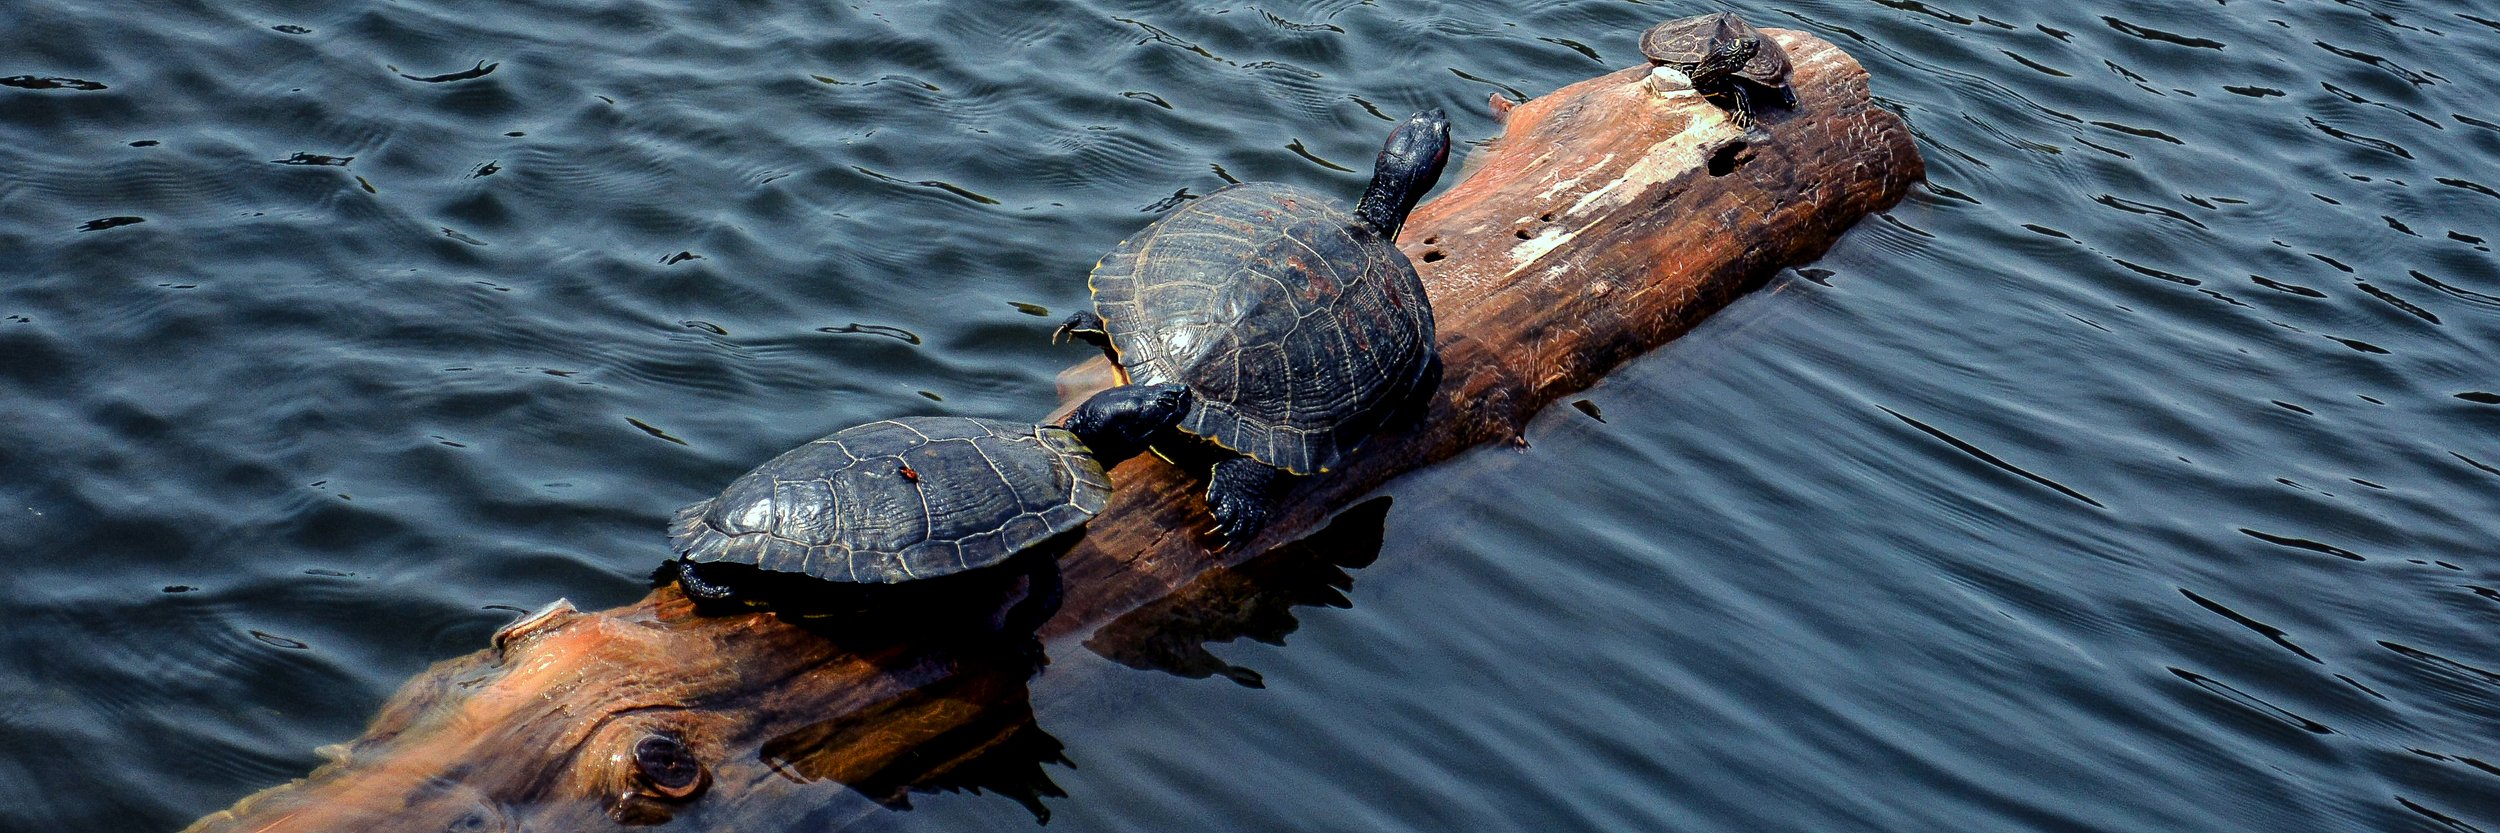  Turtles on log  © Lisa Stewart 2022 